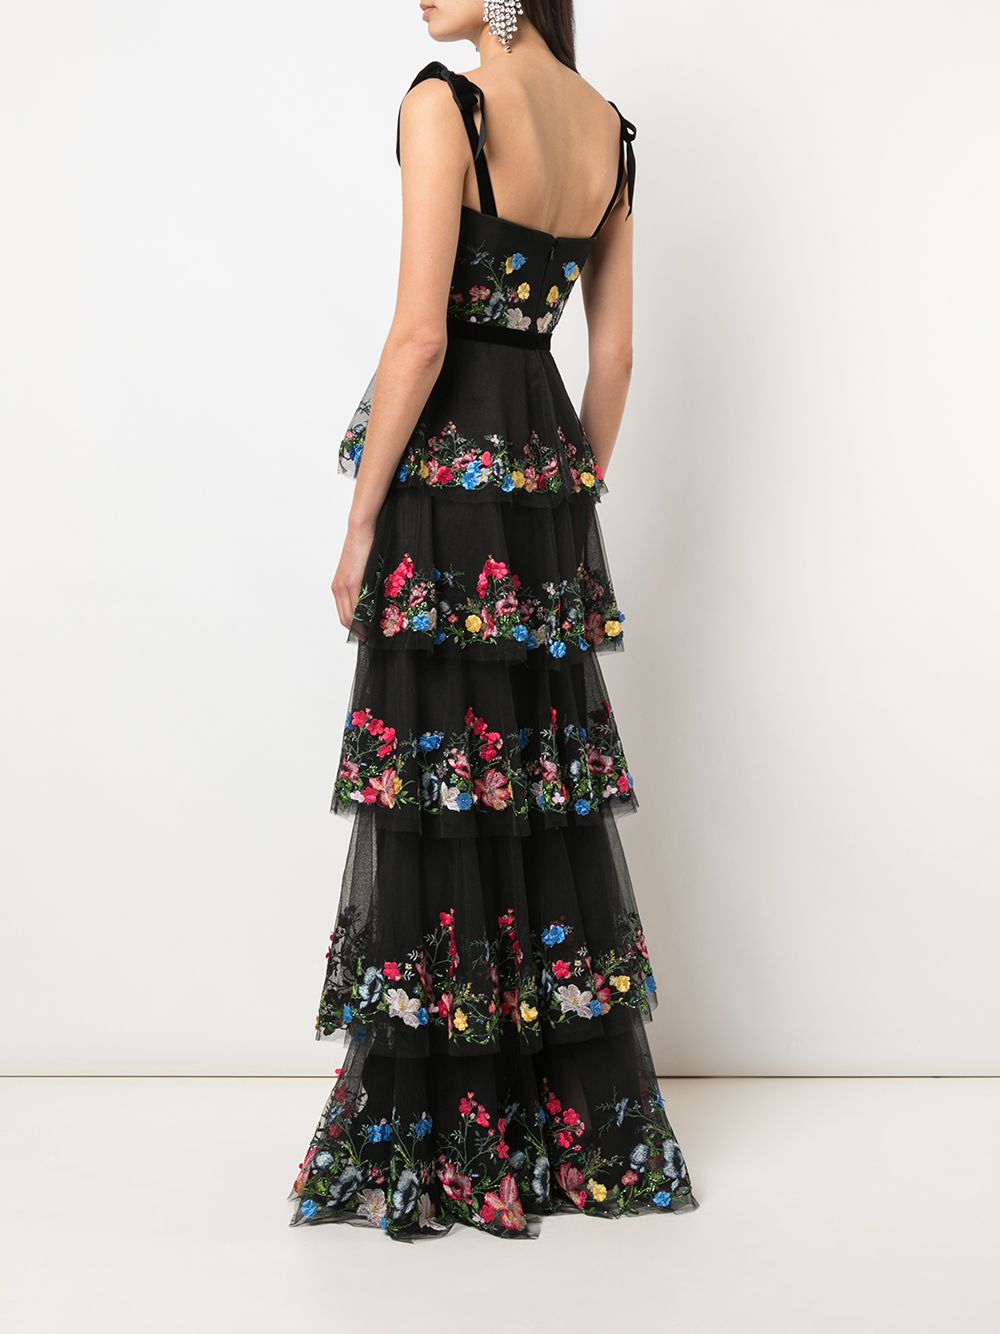 фото Marchesa notte вечернее платье с цветочной вышивкой